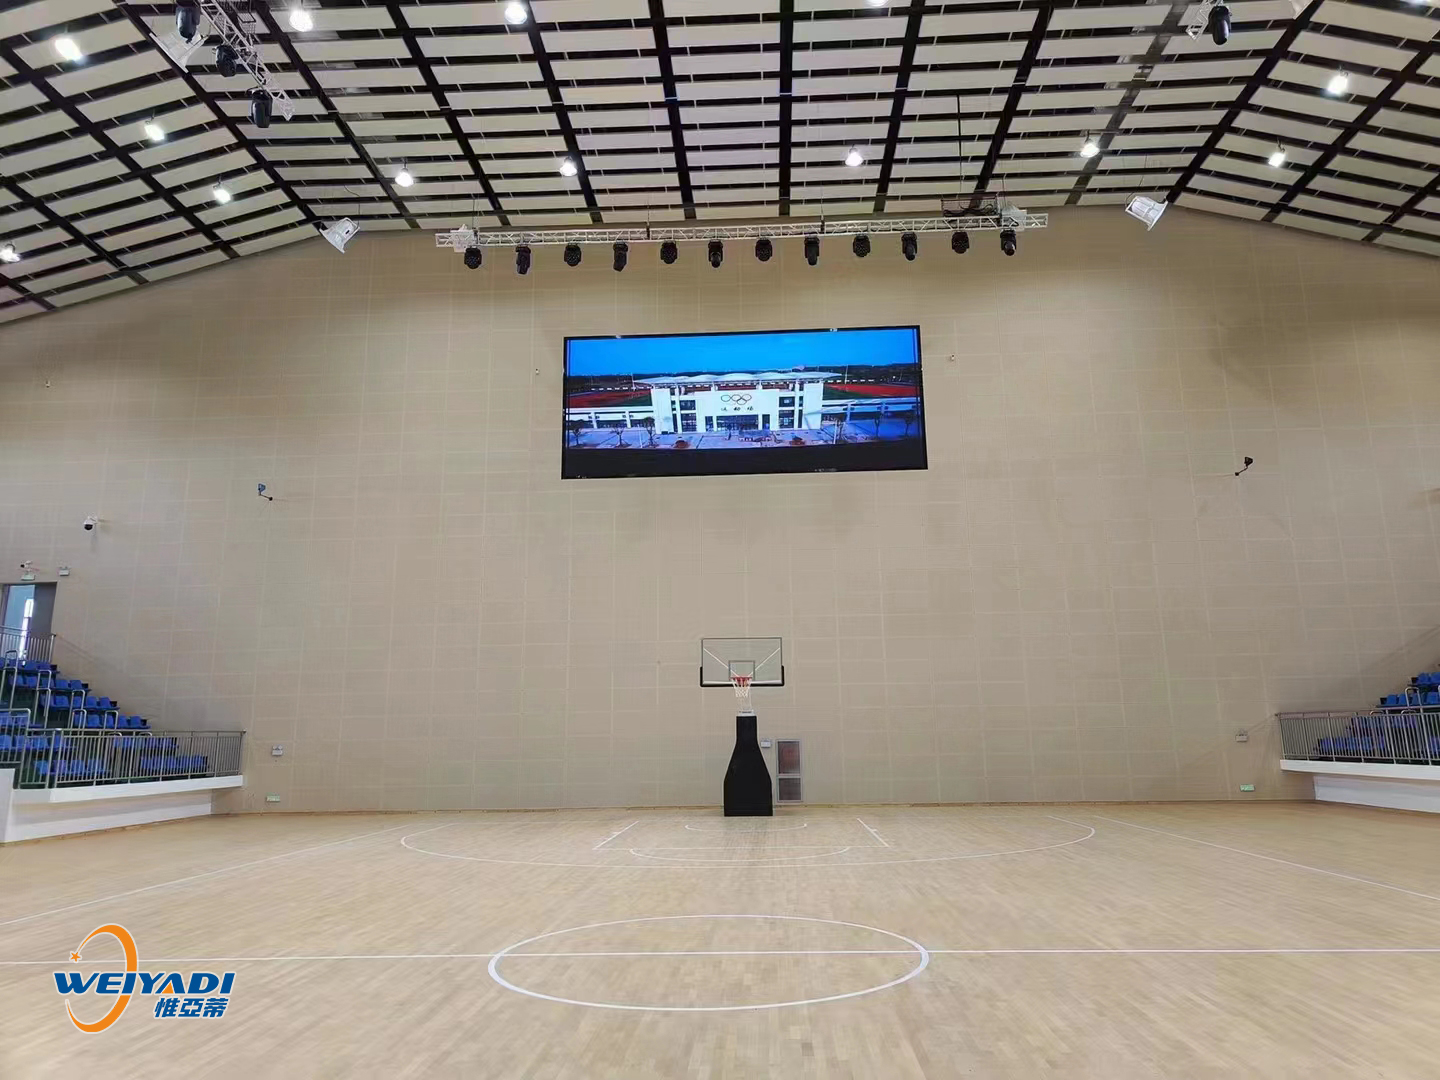 篮球场的照明照度是多(duō)少？